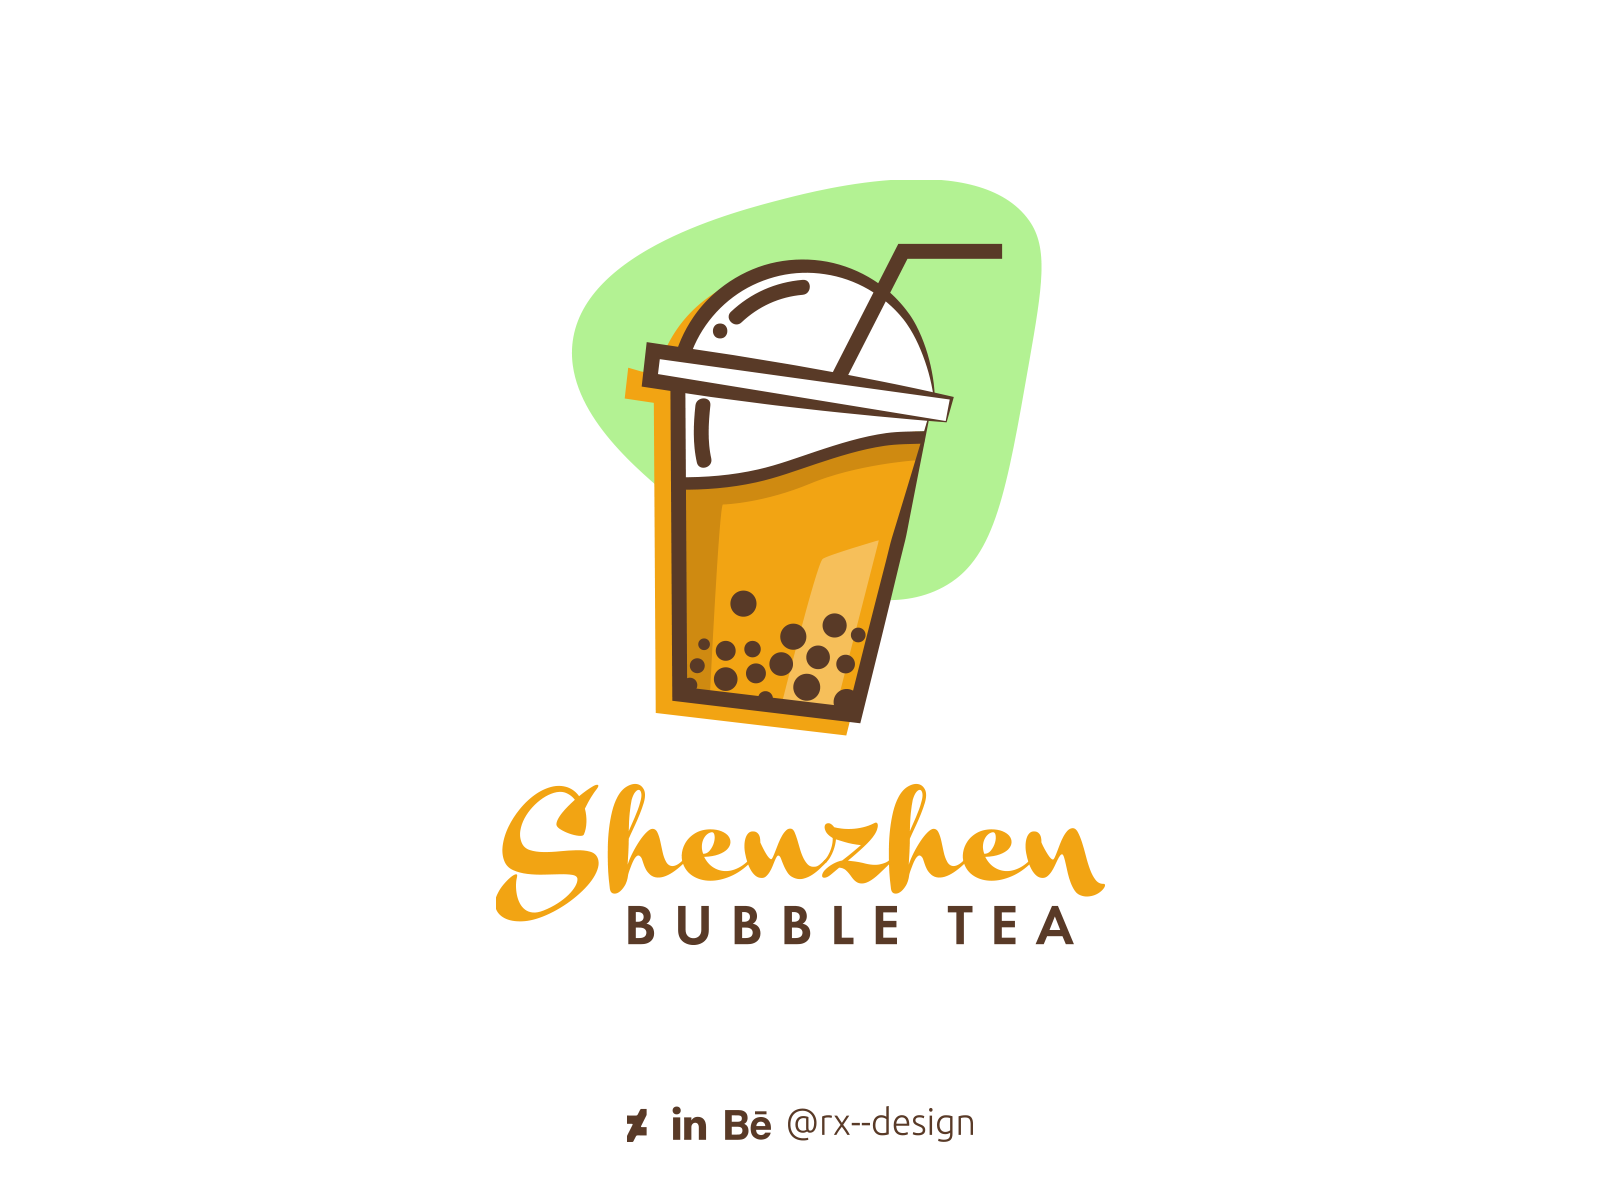 Shenzhen Bubble Tea logo by YAHMI Oussama on Dribbble